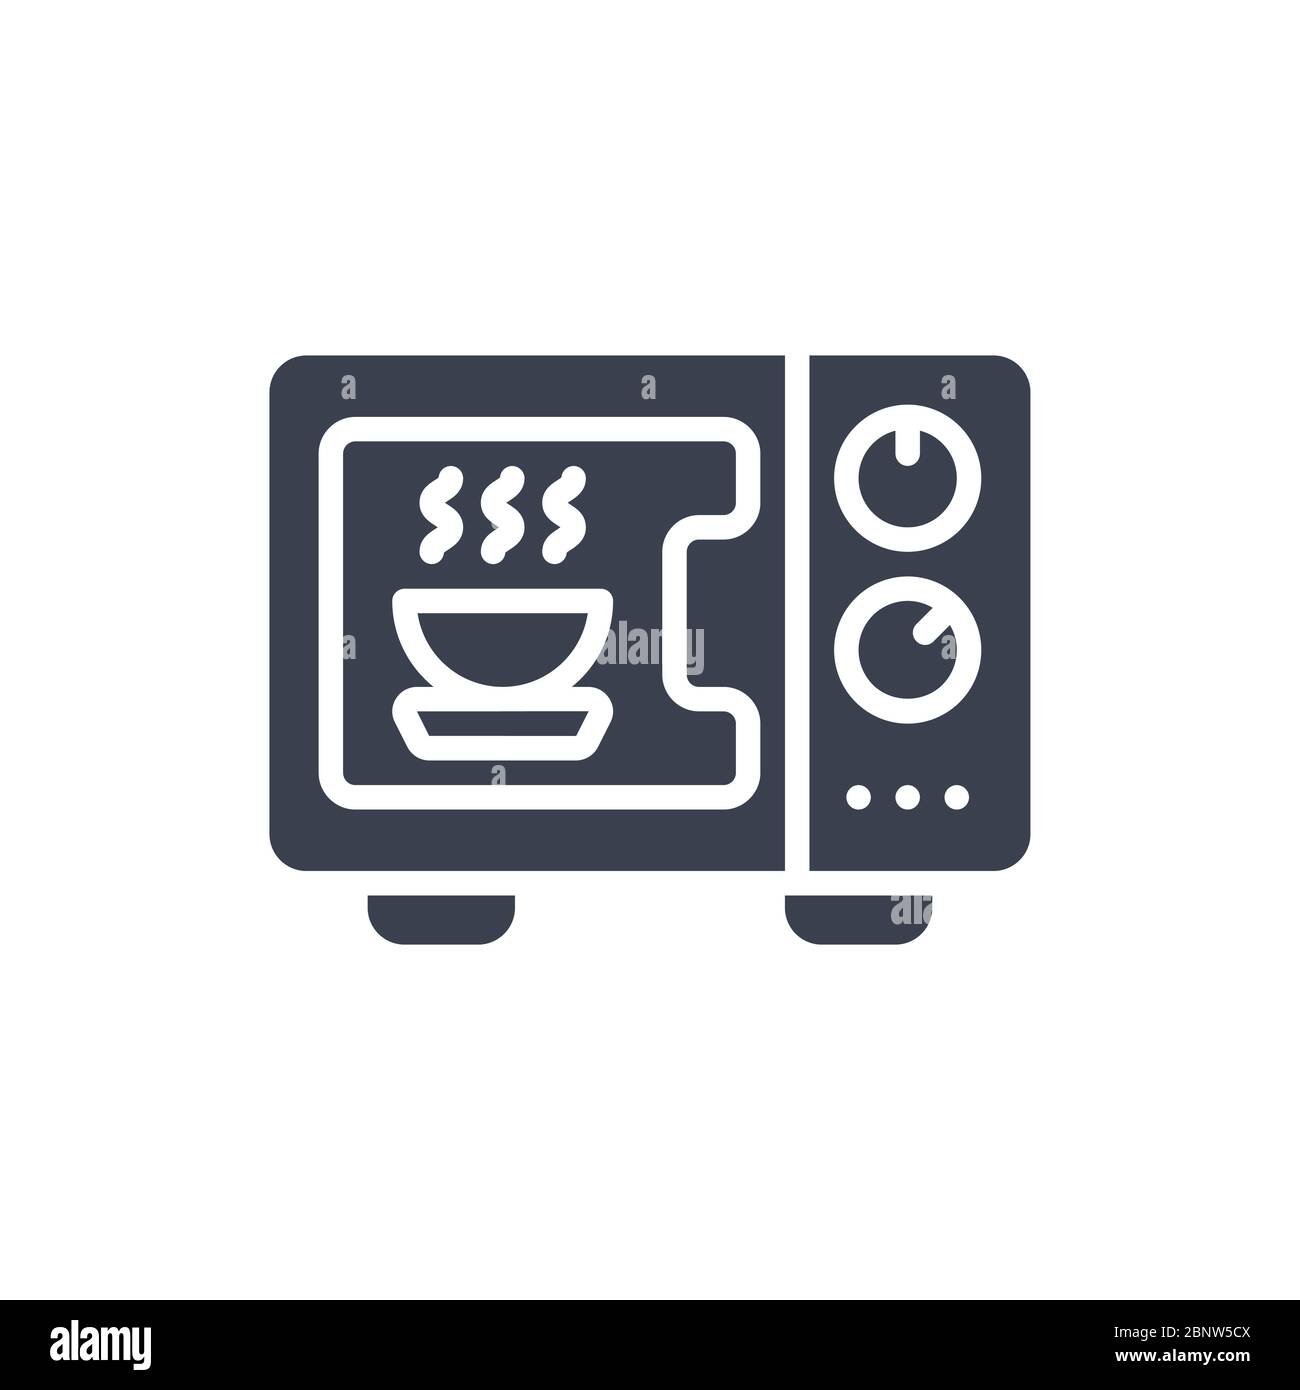 Illustrazione vettoriale di un'icona o logo a microonde con colore nero e stile di disegno glifo Illustrazione Vettoriale